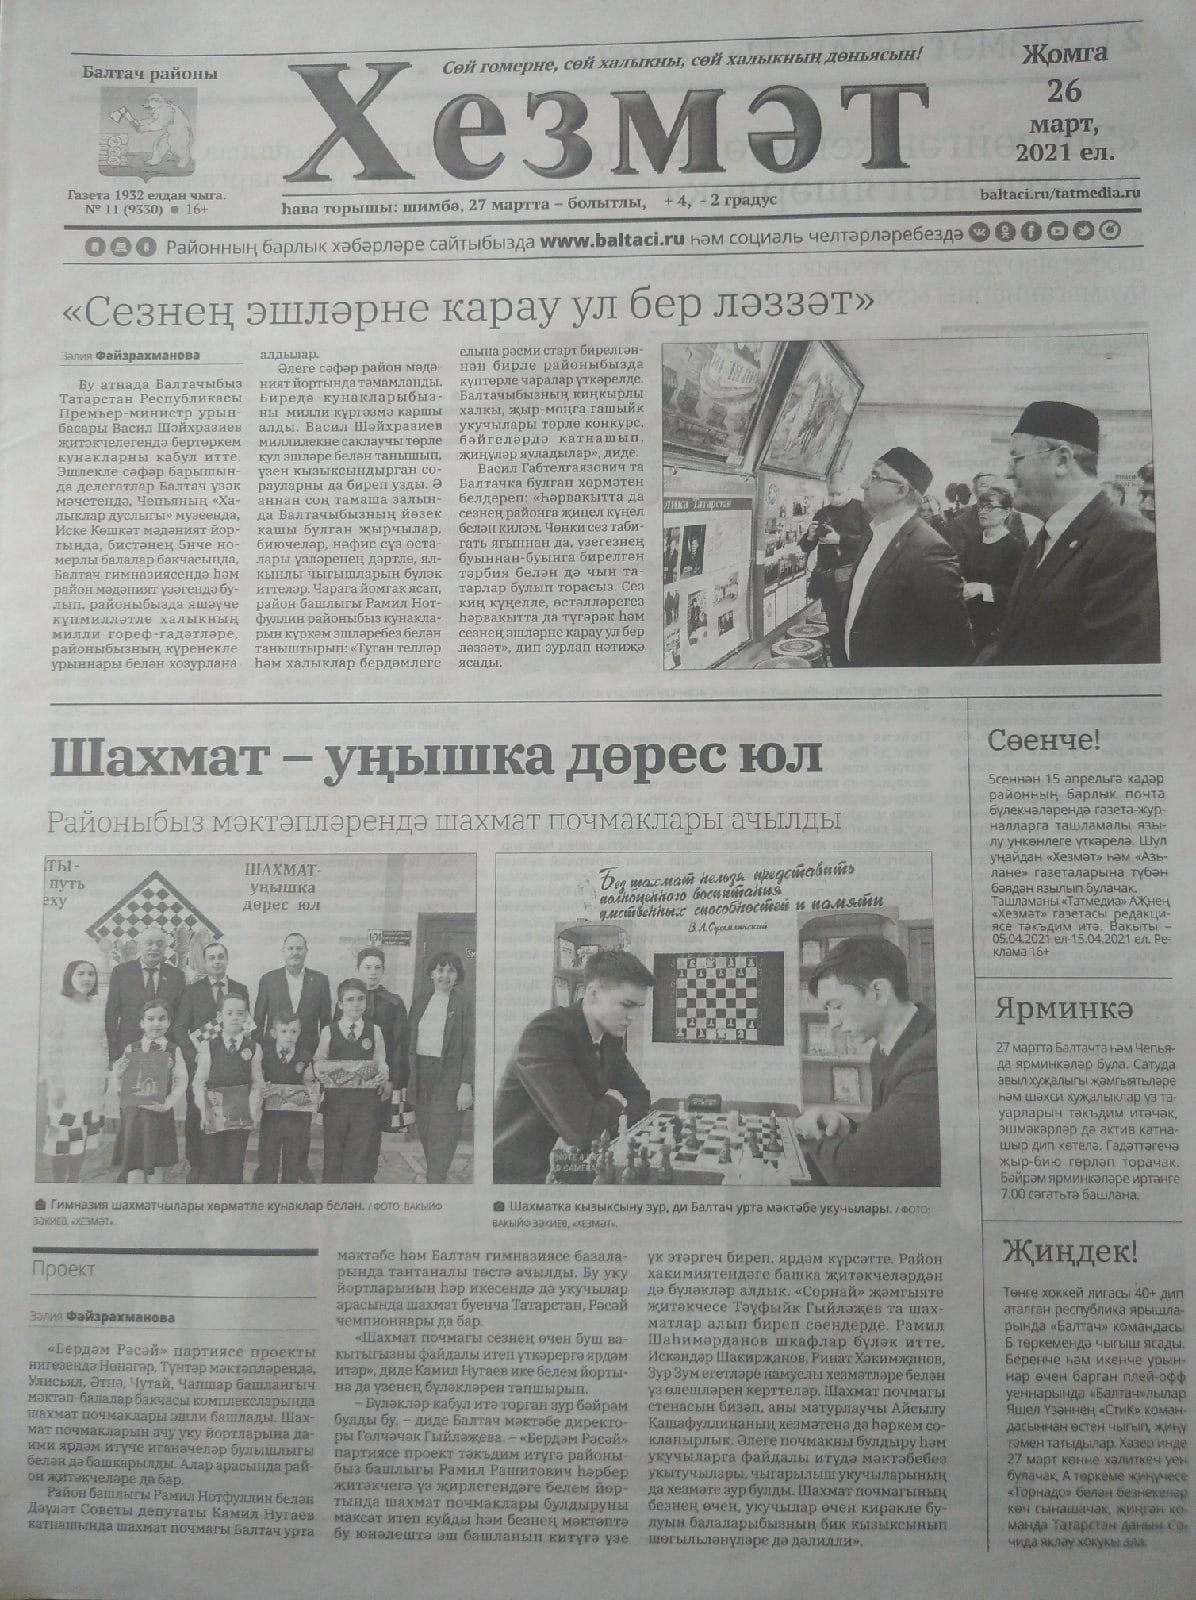 Газетаның 11нче санында (26 март, 2021 ел) чыгарылган белдерүләр һәм рекламалар